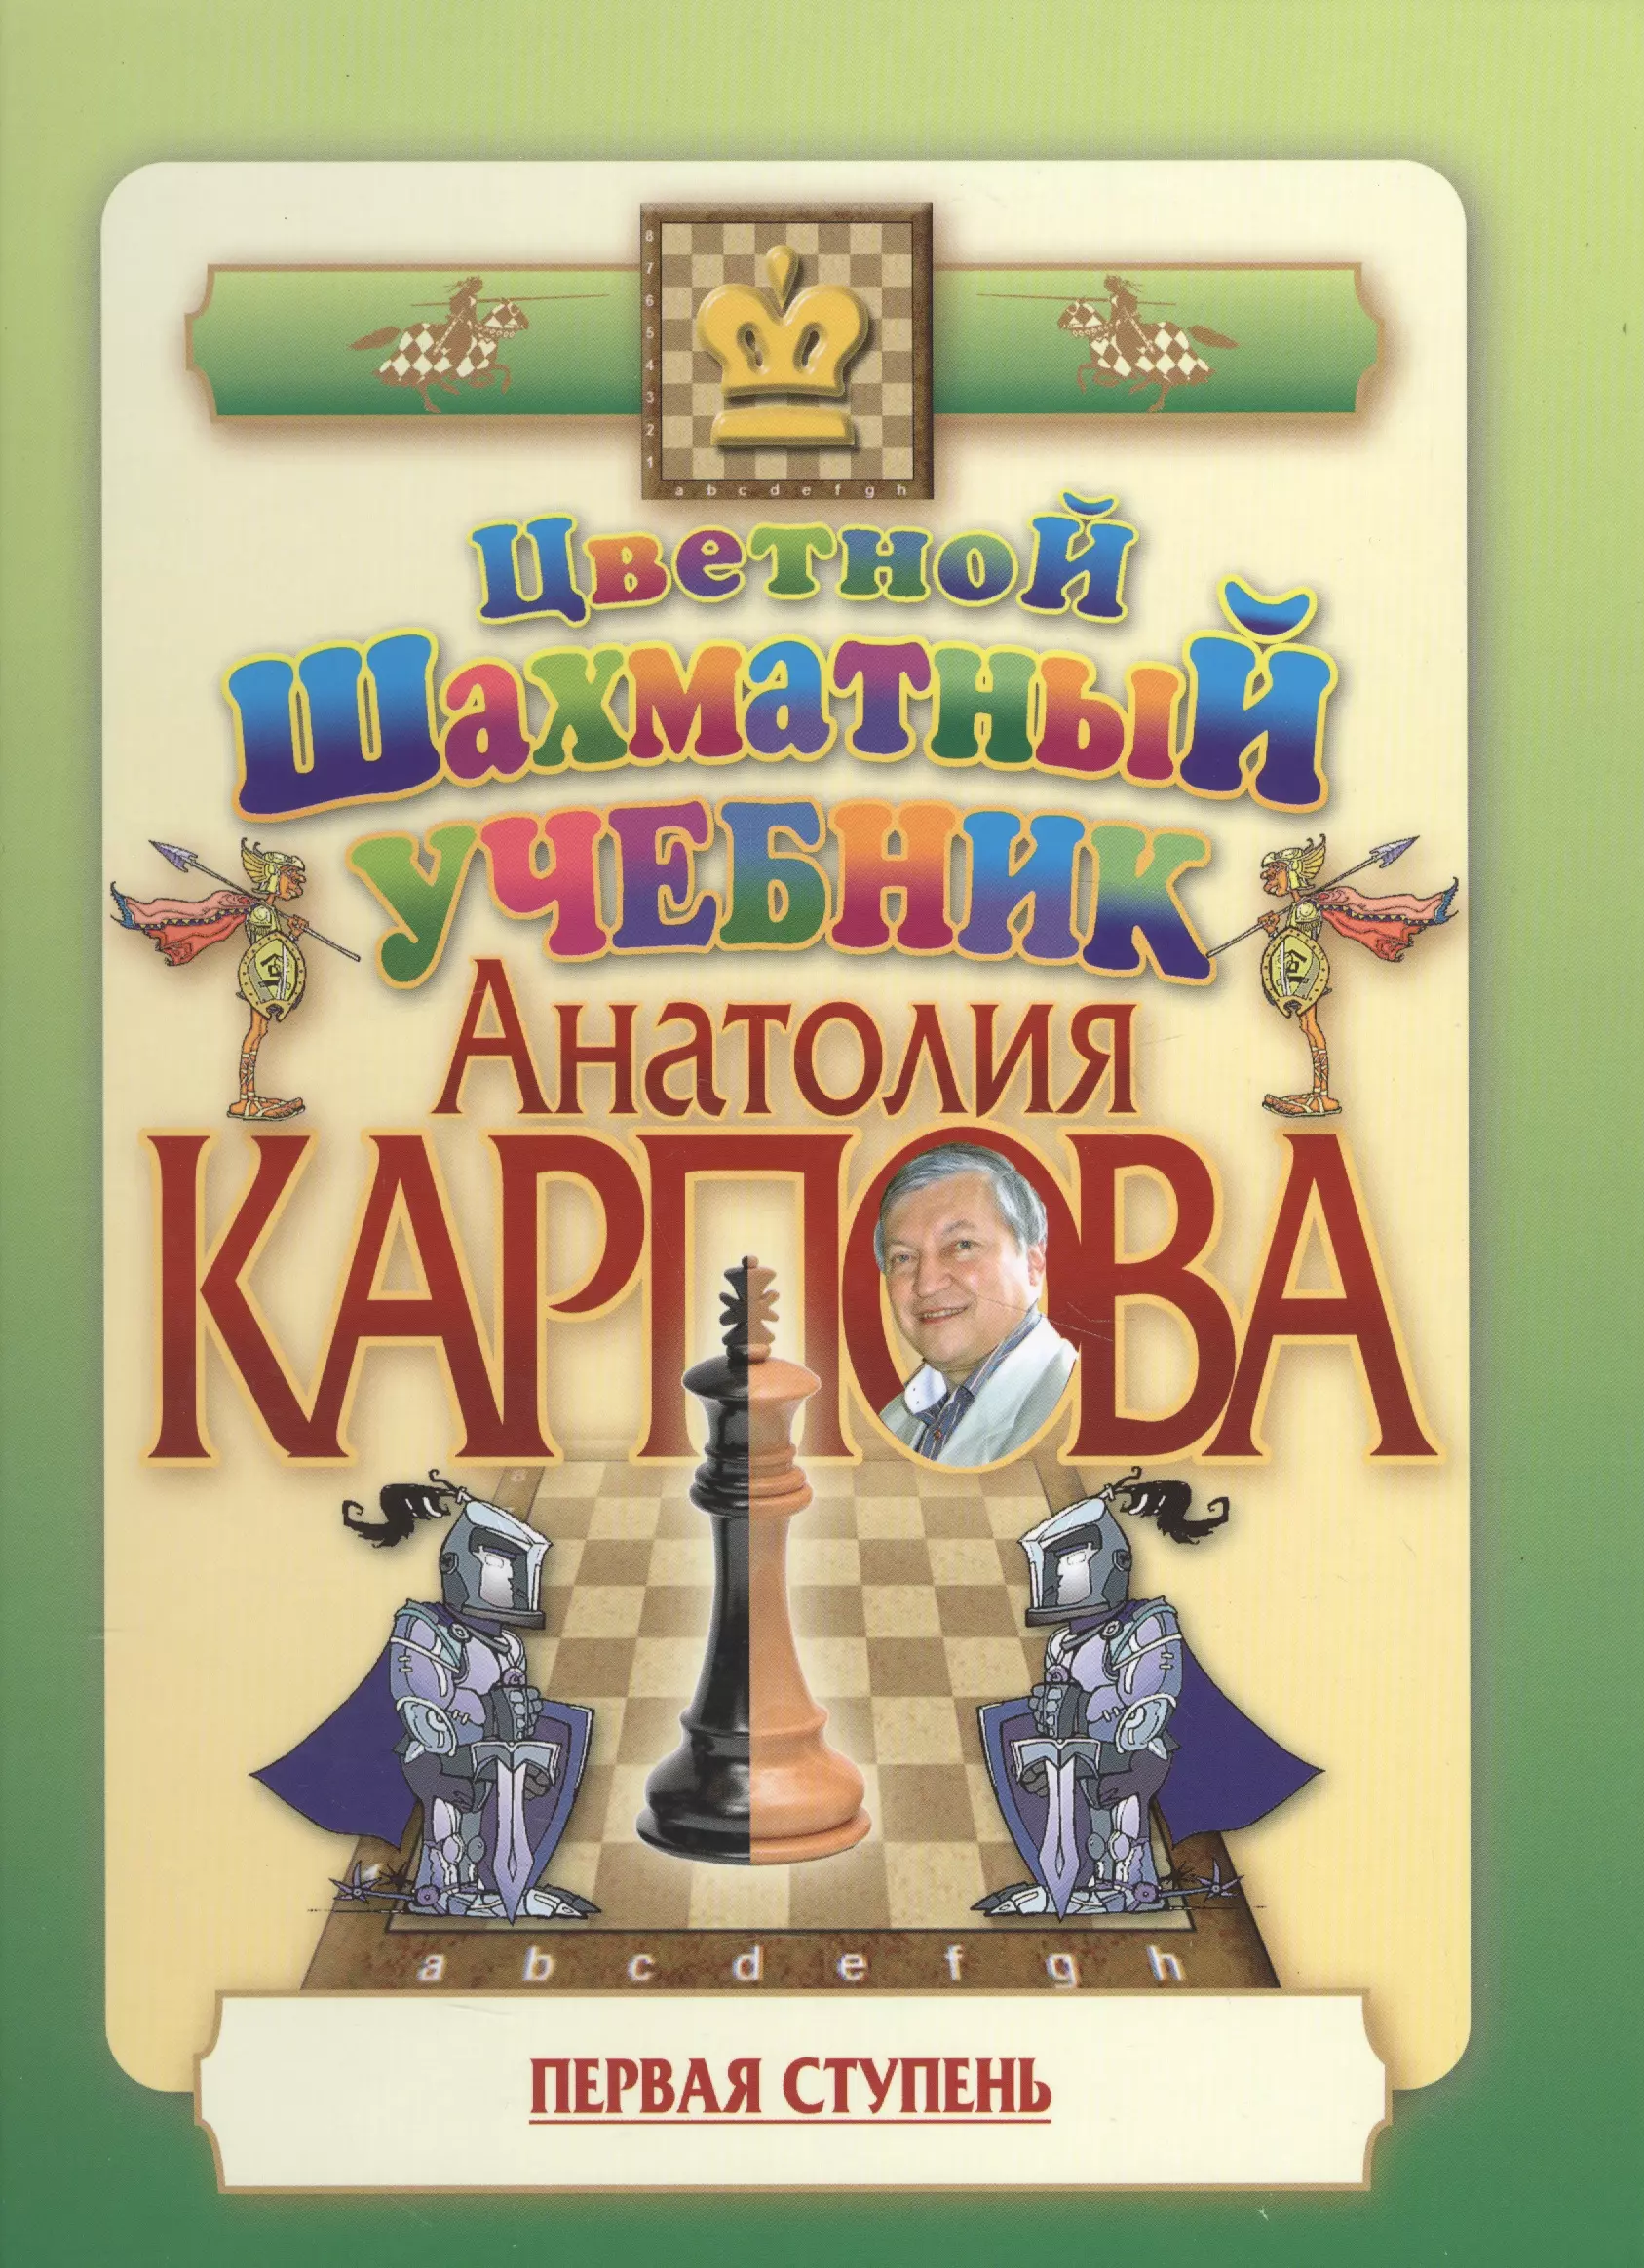 Цветной шахматный учебник Анатолия Карпова. Первая ступень. карпов а цветной шахматный учебник анатолия карпова первая ступень подарочное издание